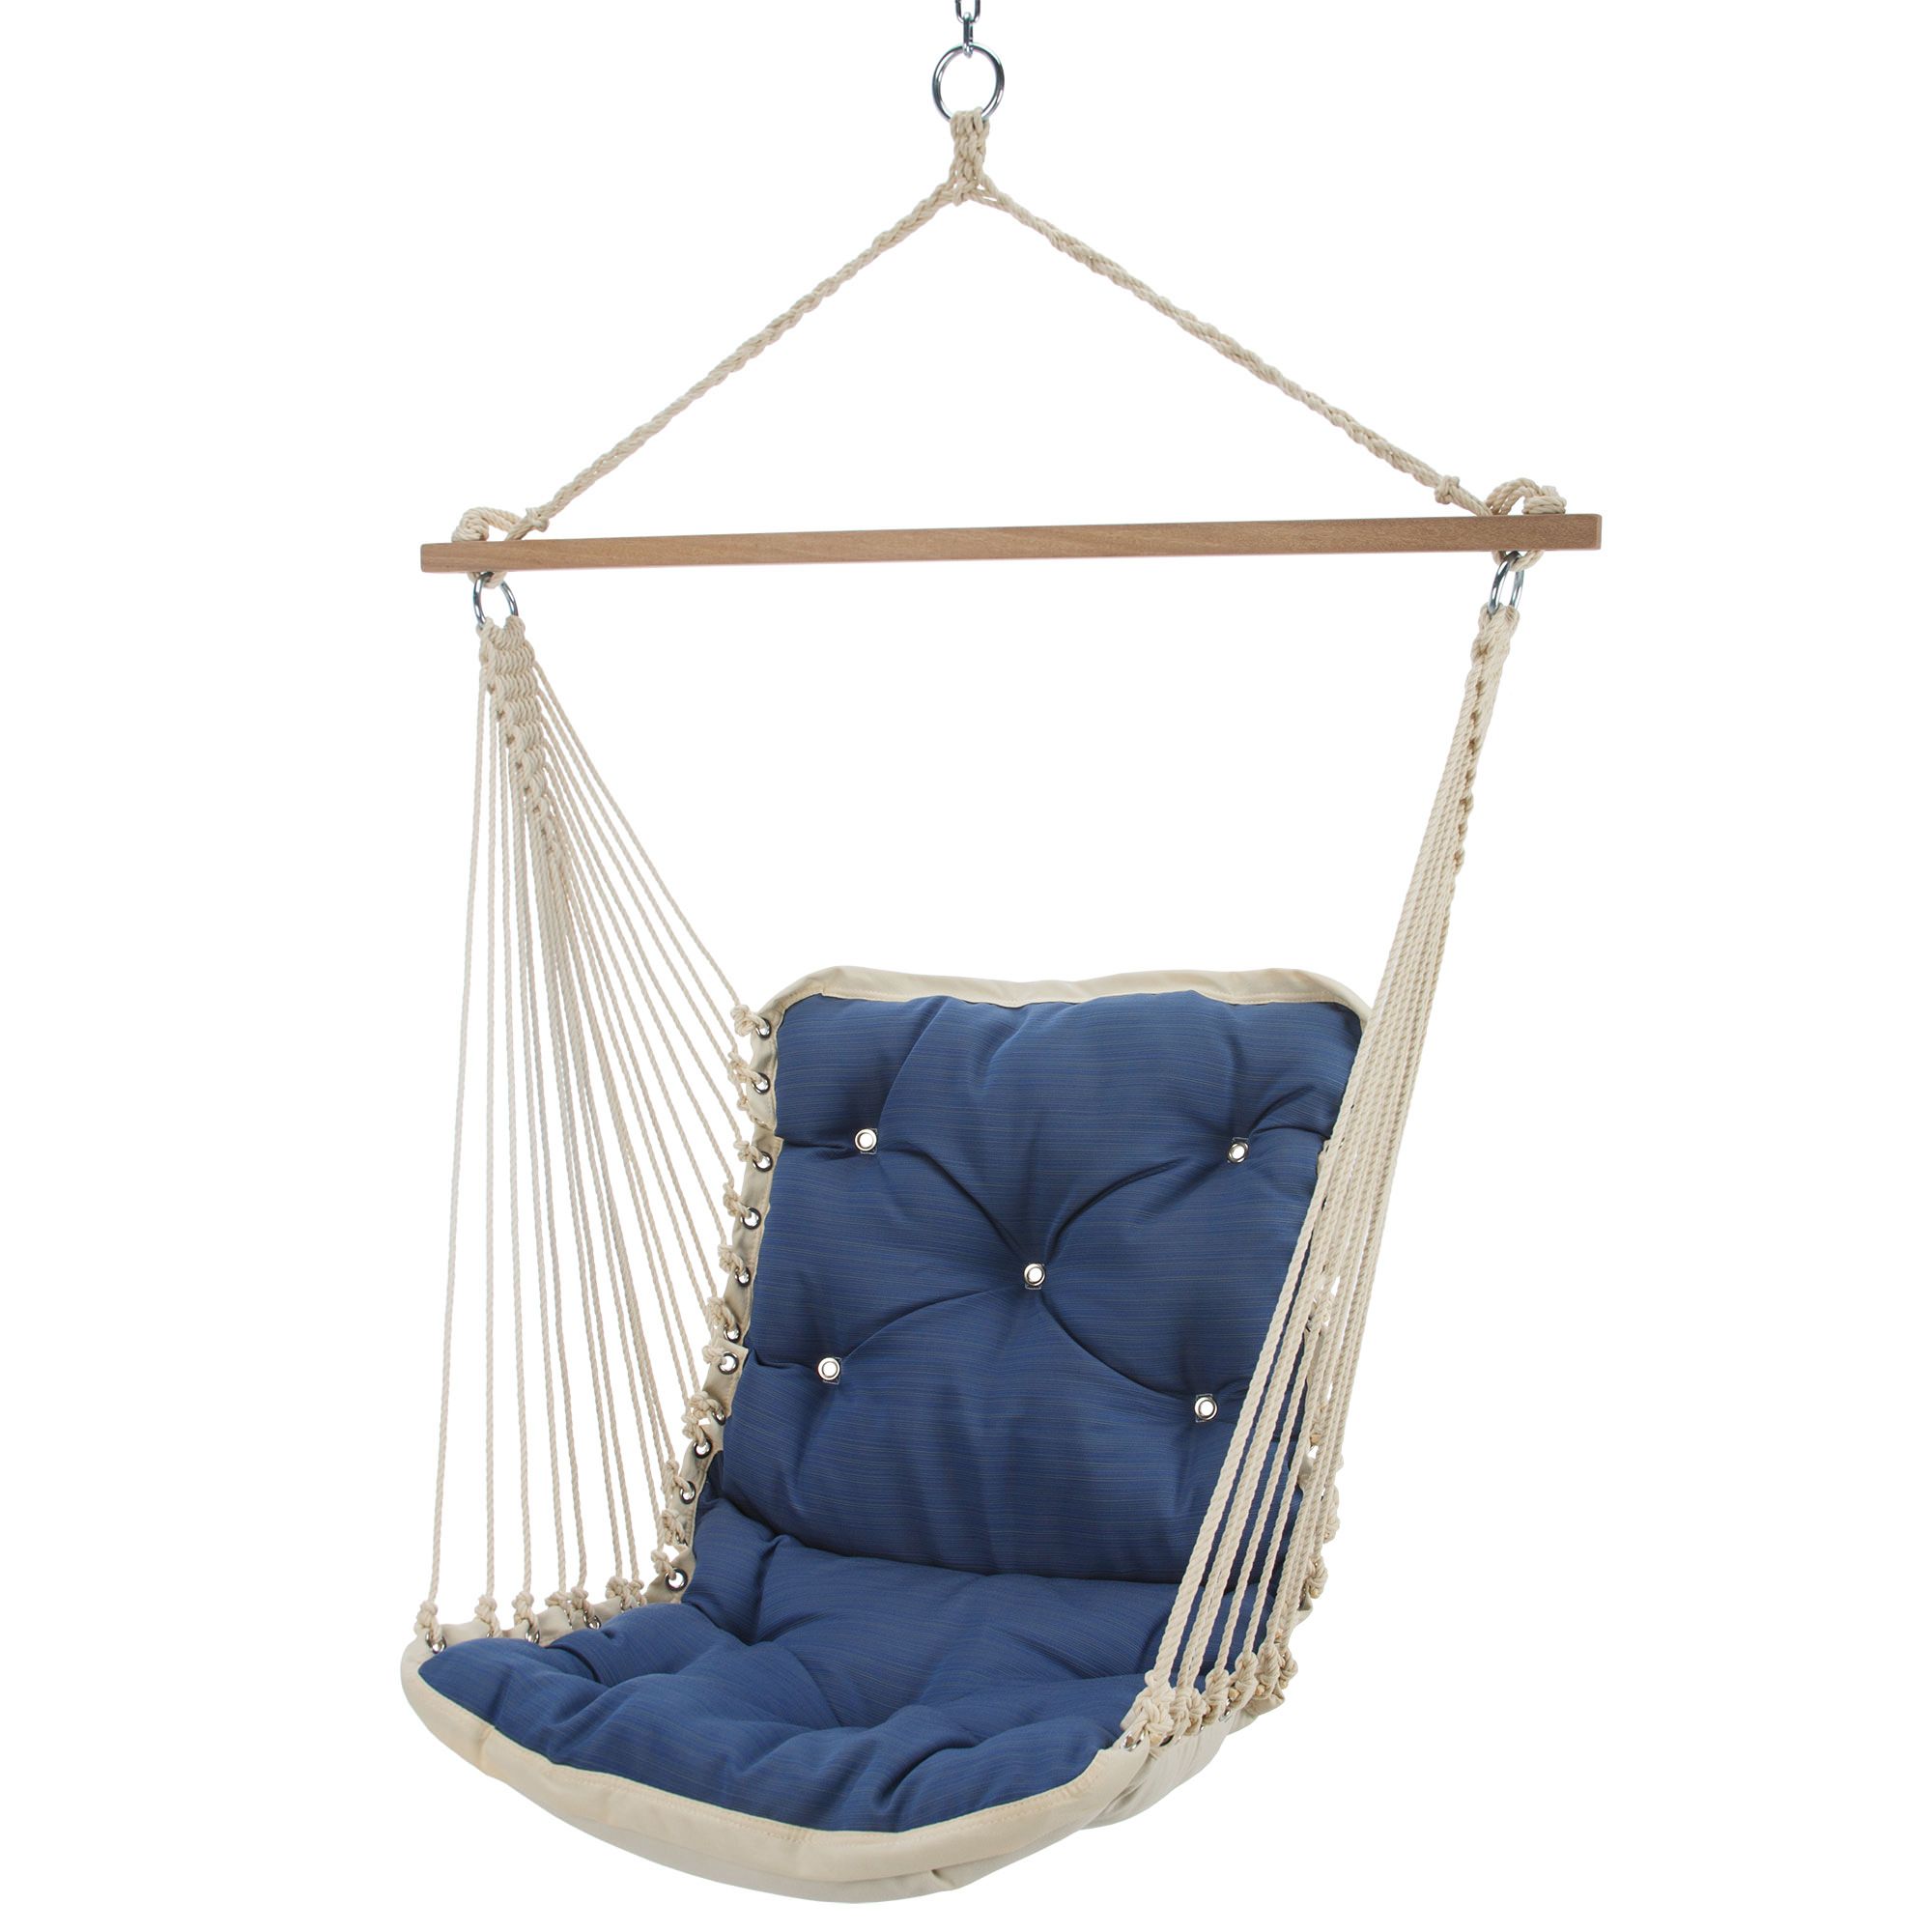 Hatteras hammocks single swing stand